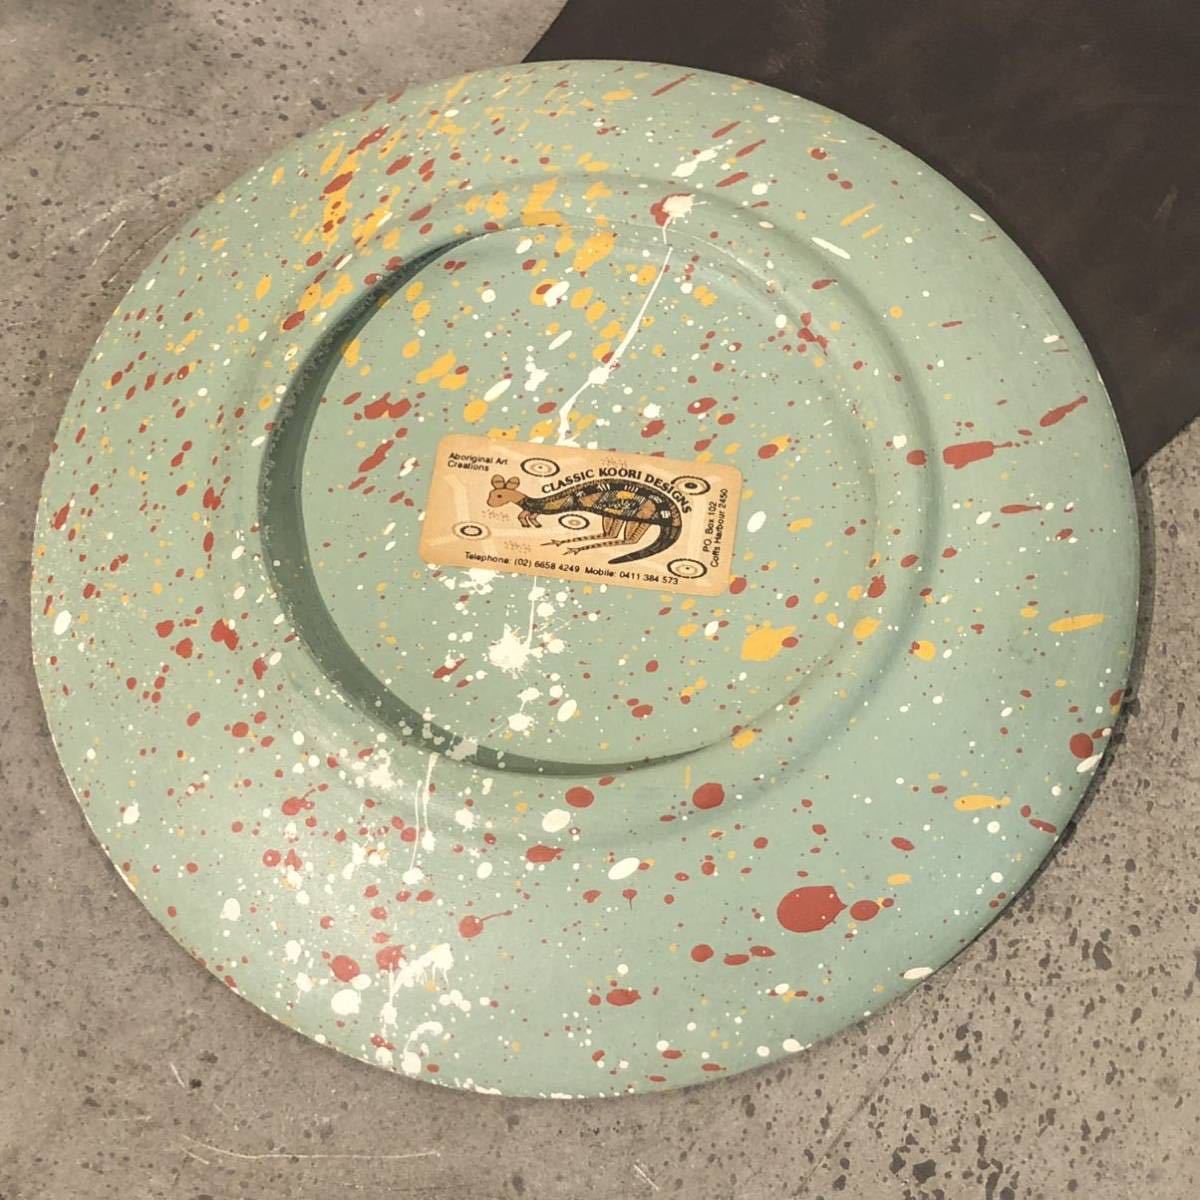 【即決/送料無料】 classic koori designs アボリジニアートプレート 陶磁器製飾り皿 絵皿 一点物 ハンドメイド 海外土産 インテリアの画像3